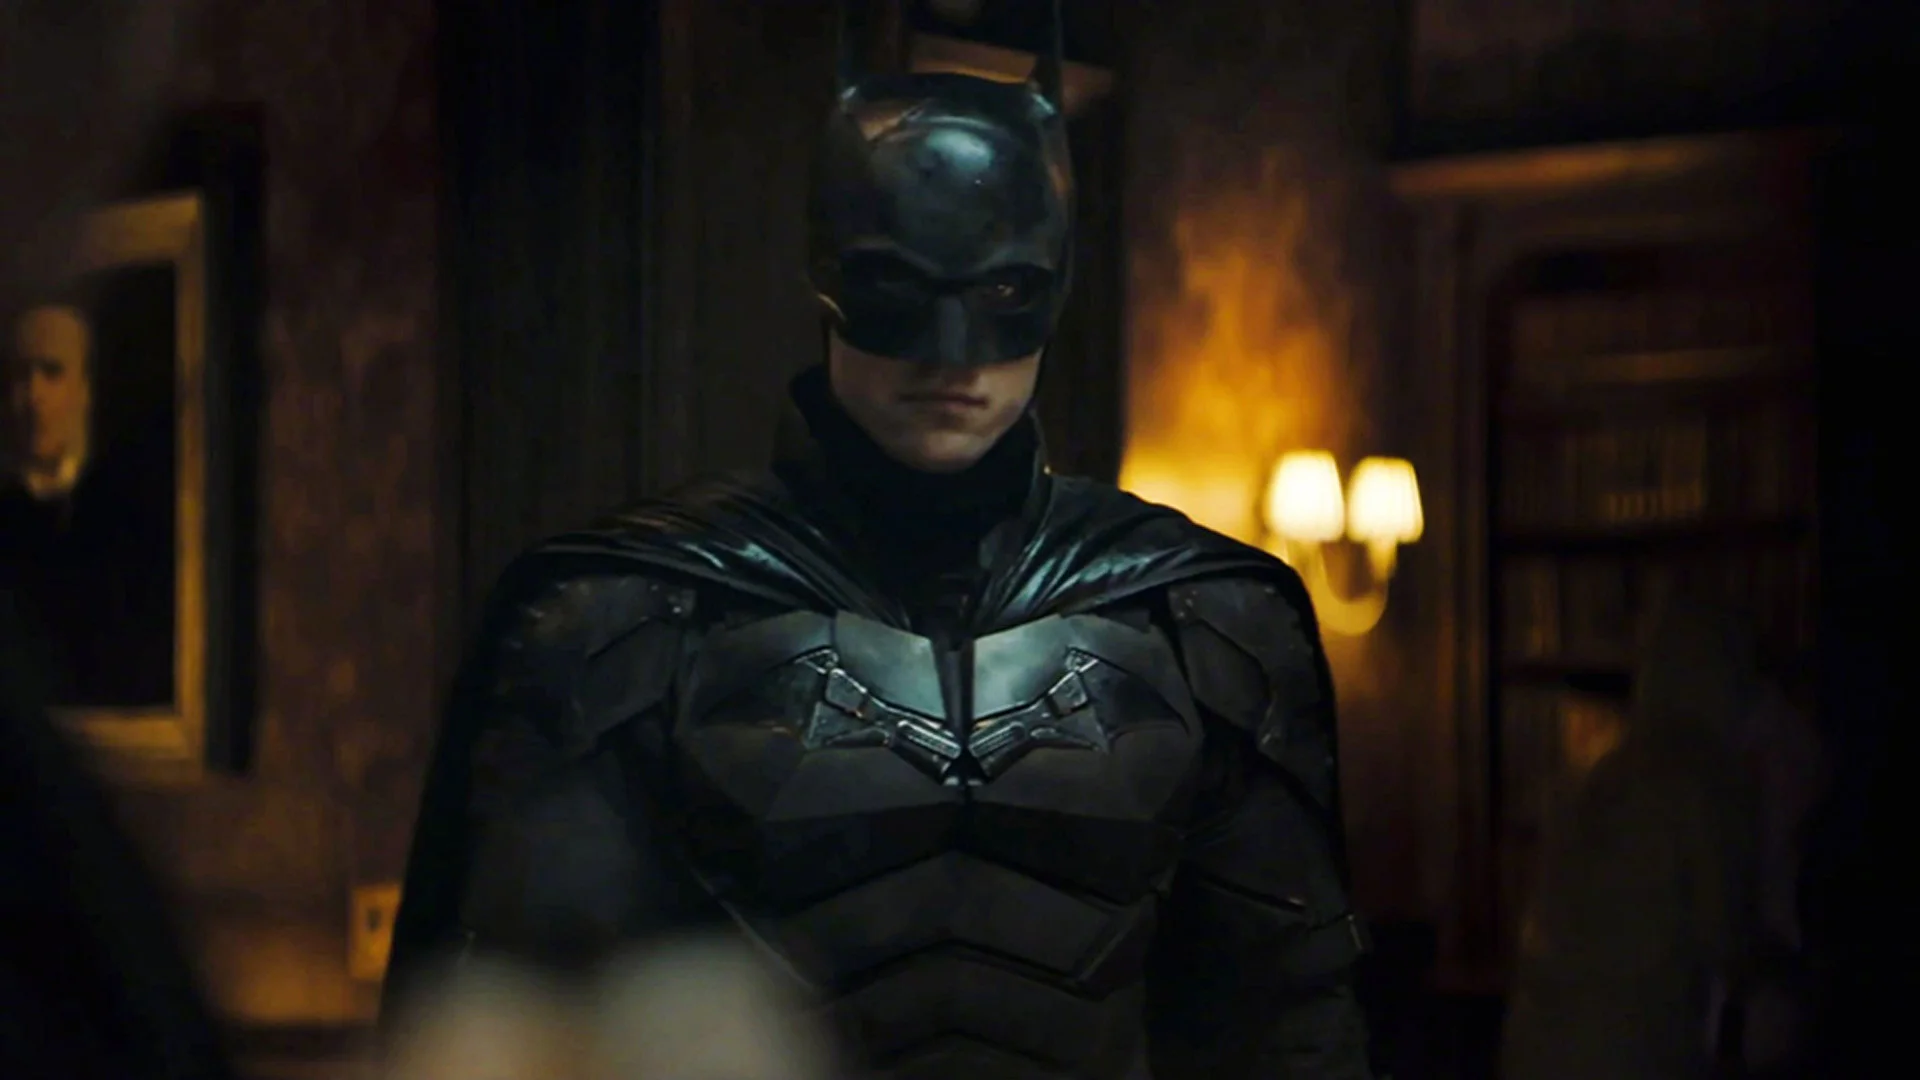 "The Batman": Detective Batman is serious about the case